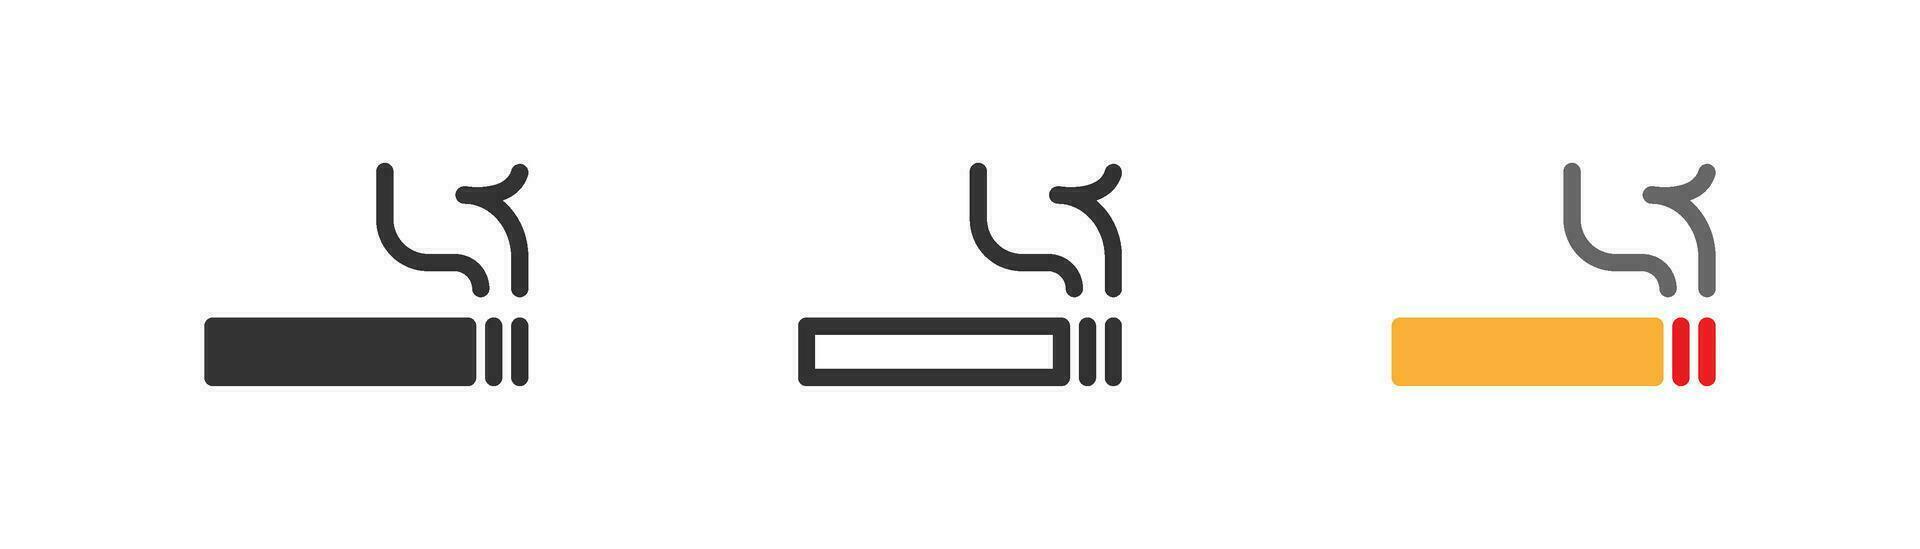 cigarrillo editable icono, de fumar cigarrillo y fumar, vector ilustración